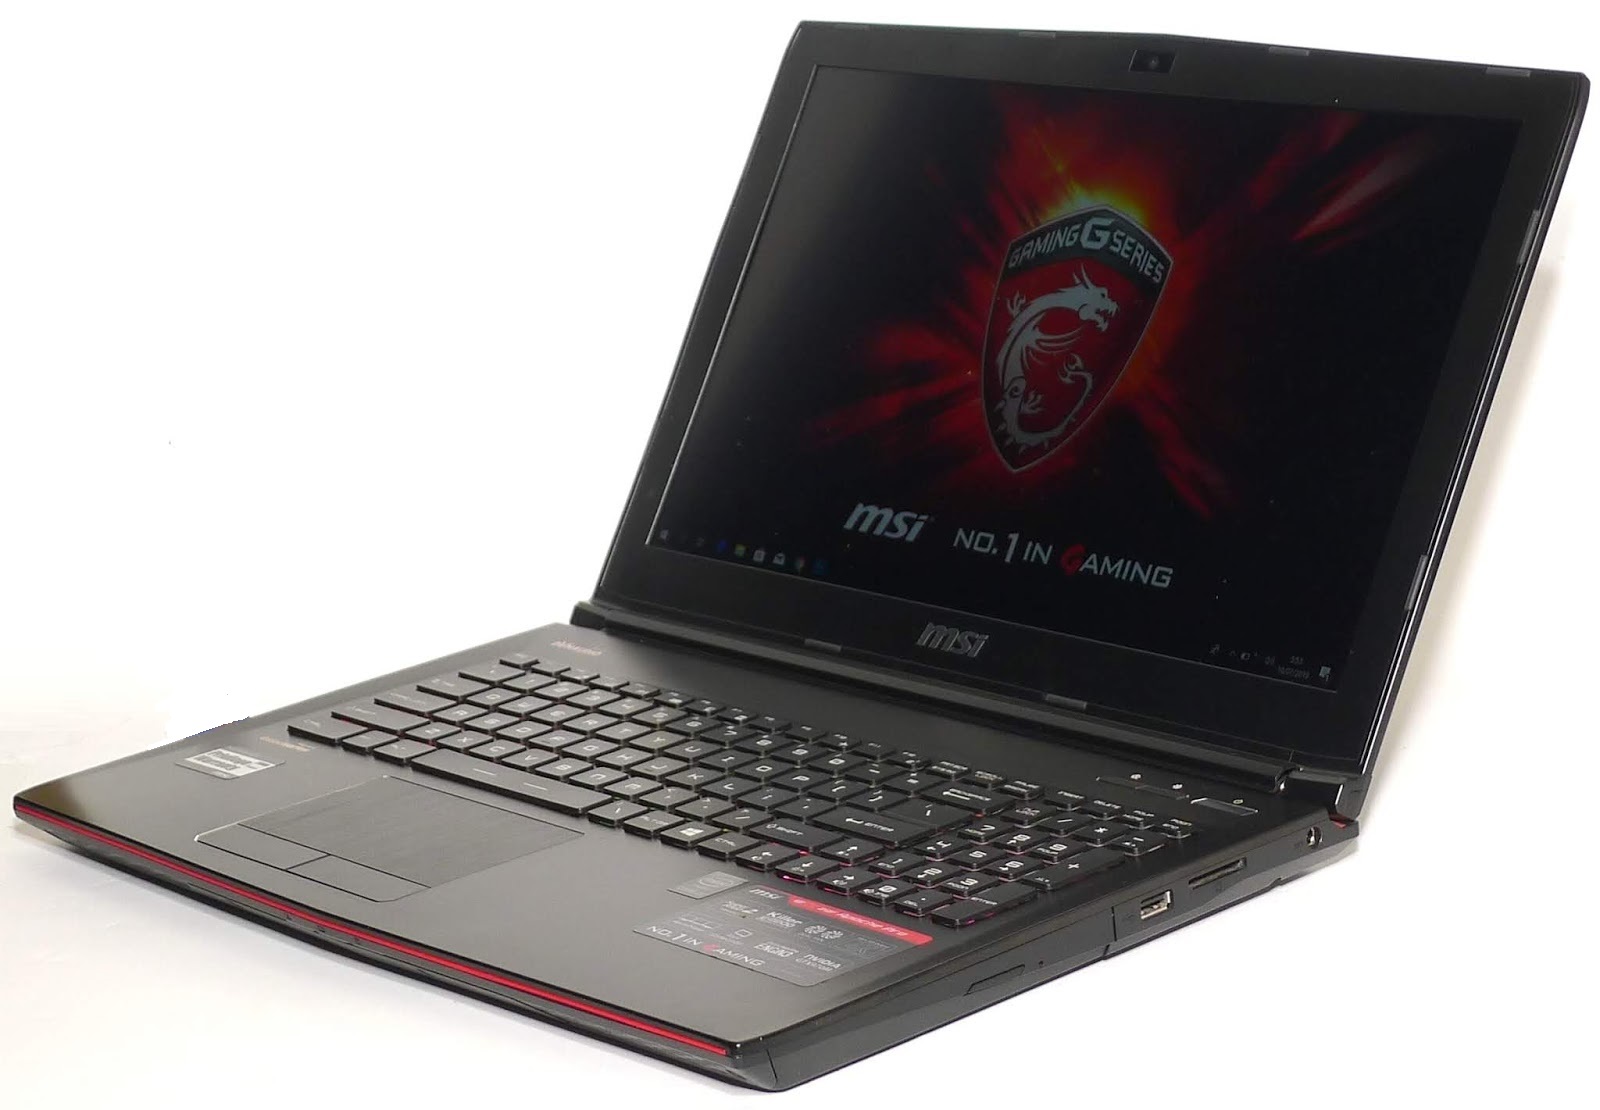 Jual Laptop Gaming MSI GE62 2QF ApachePro Core i7 Second | Jual Beli